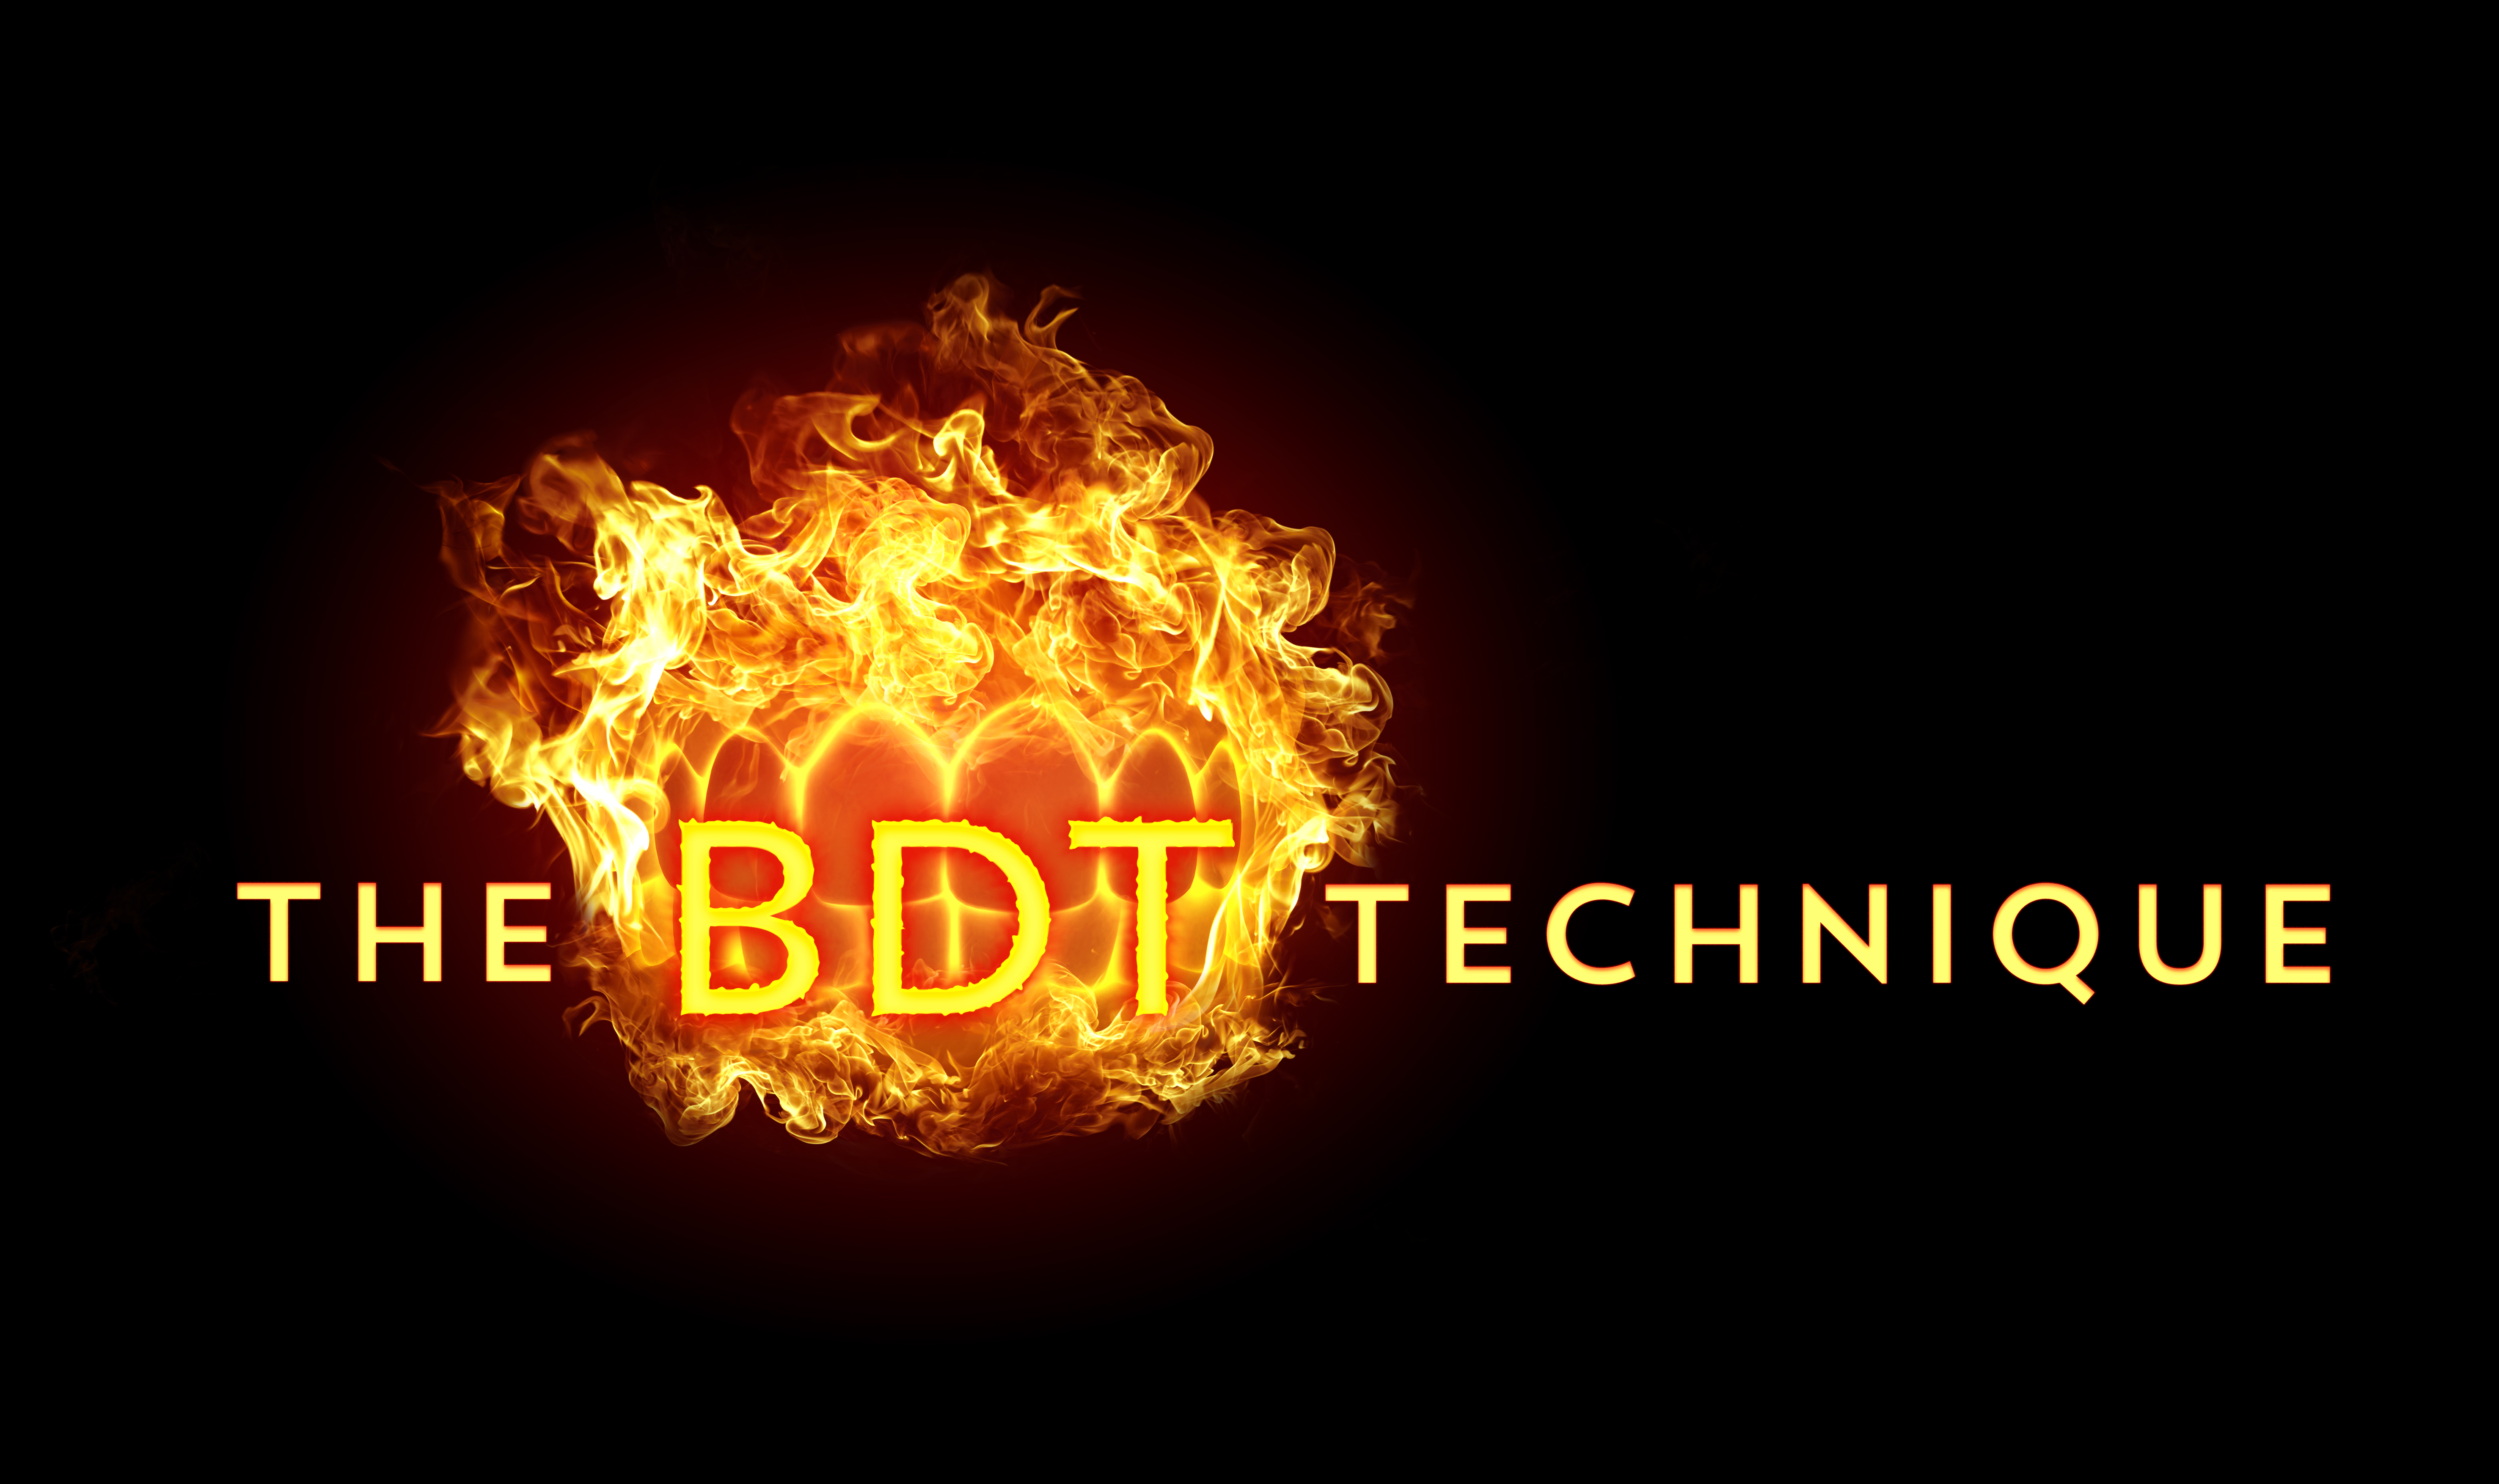 https://beeverdentaltechnology.files.wordpress.com/2015/01/the_btd_technique_flames_2.jpg